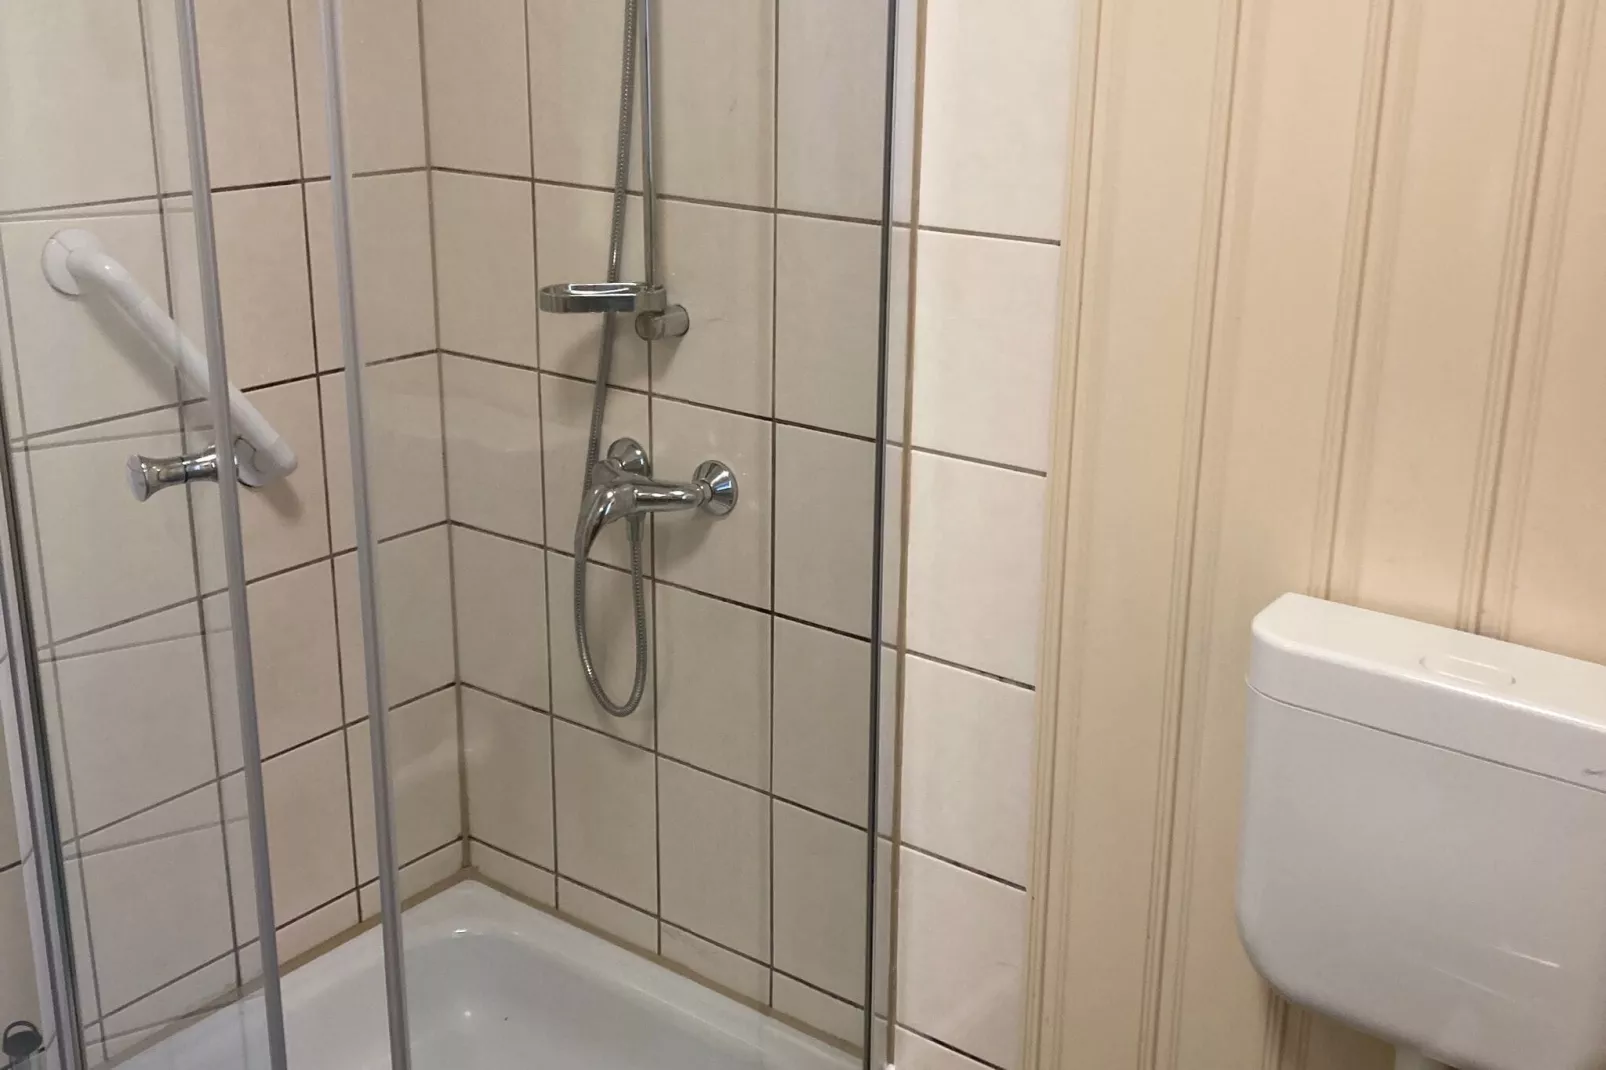 Knusperhäuschen-Badkamer